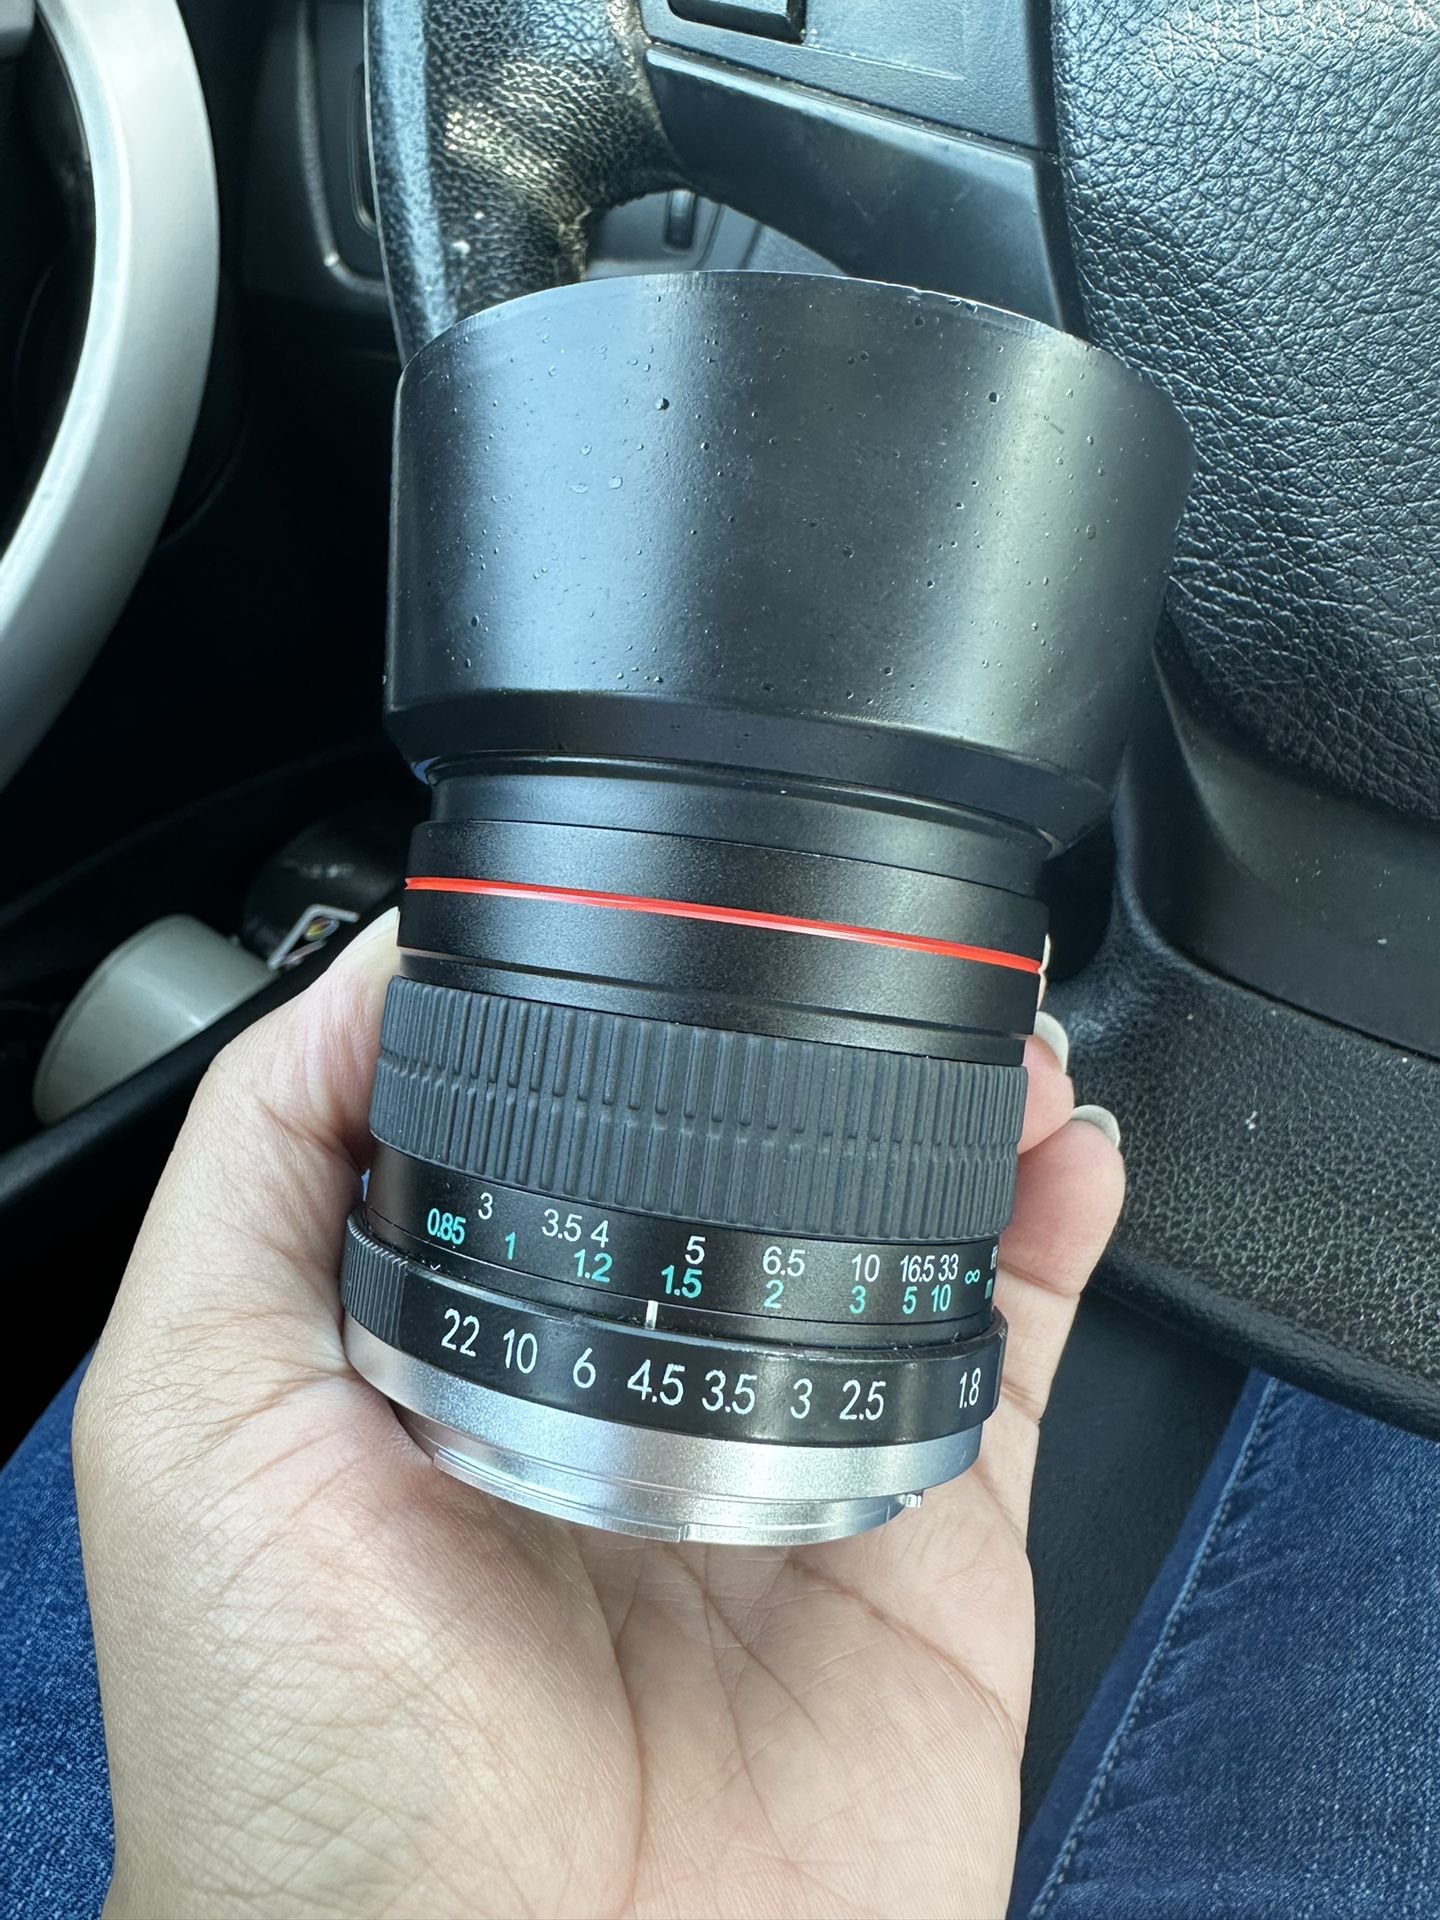 85mm Lightdow Lens